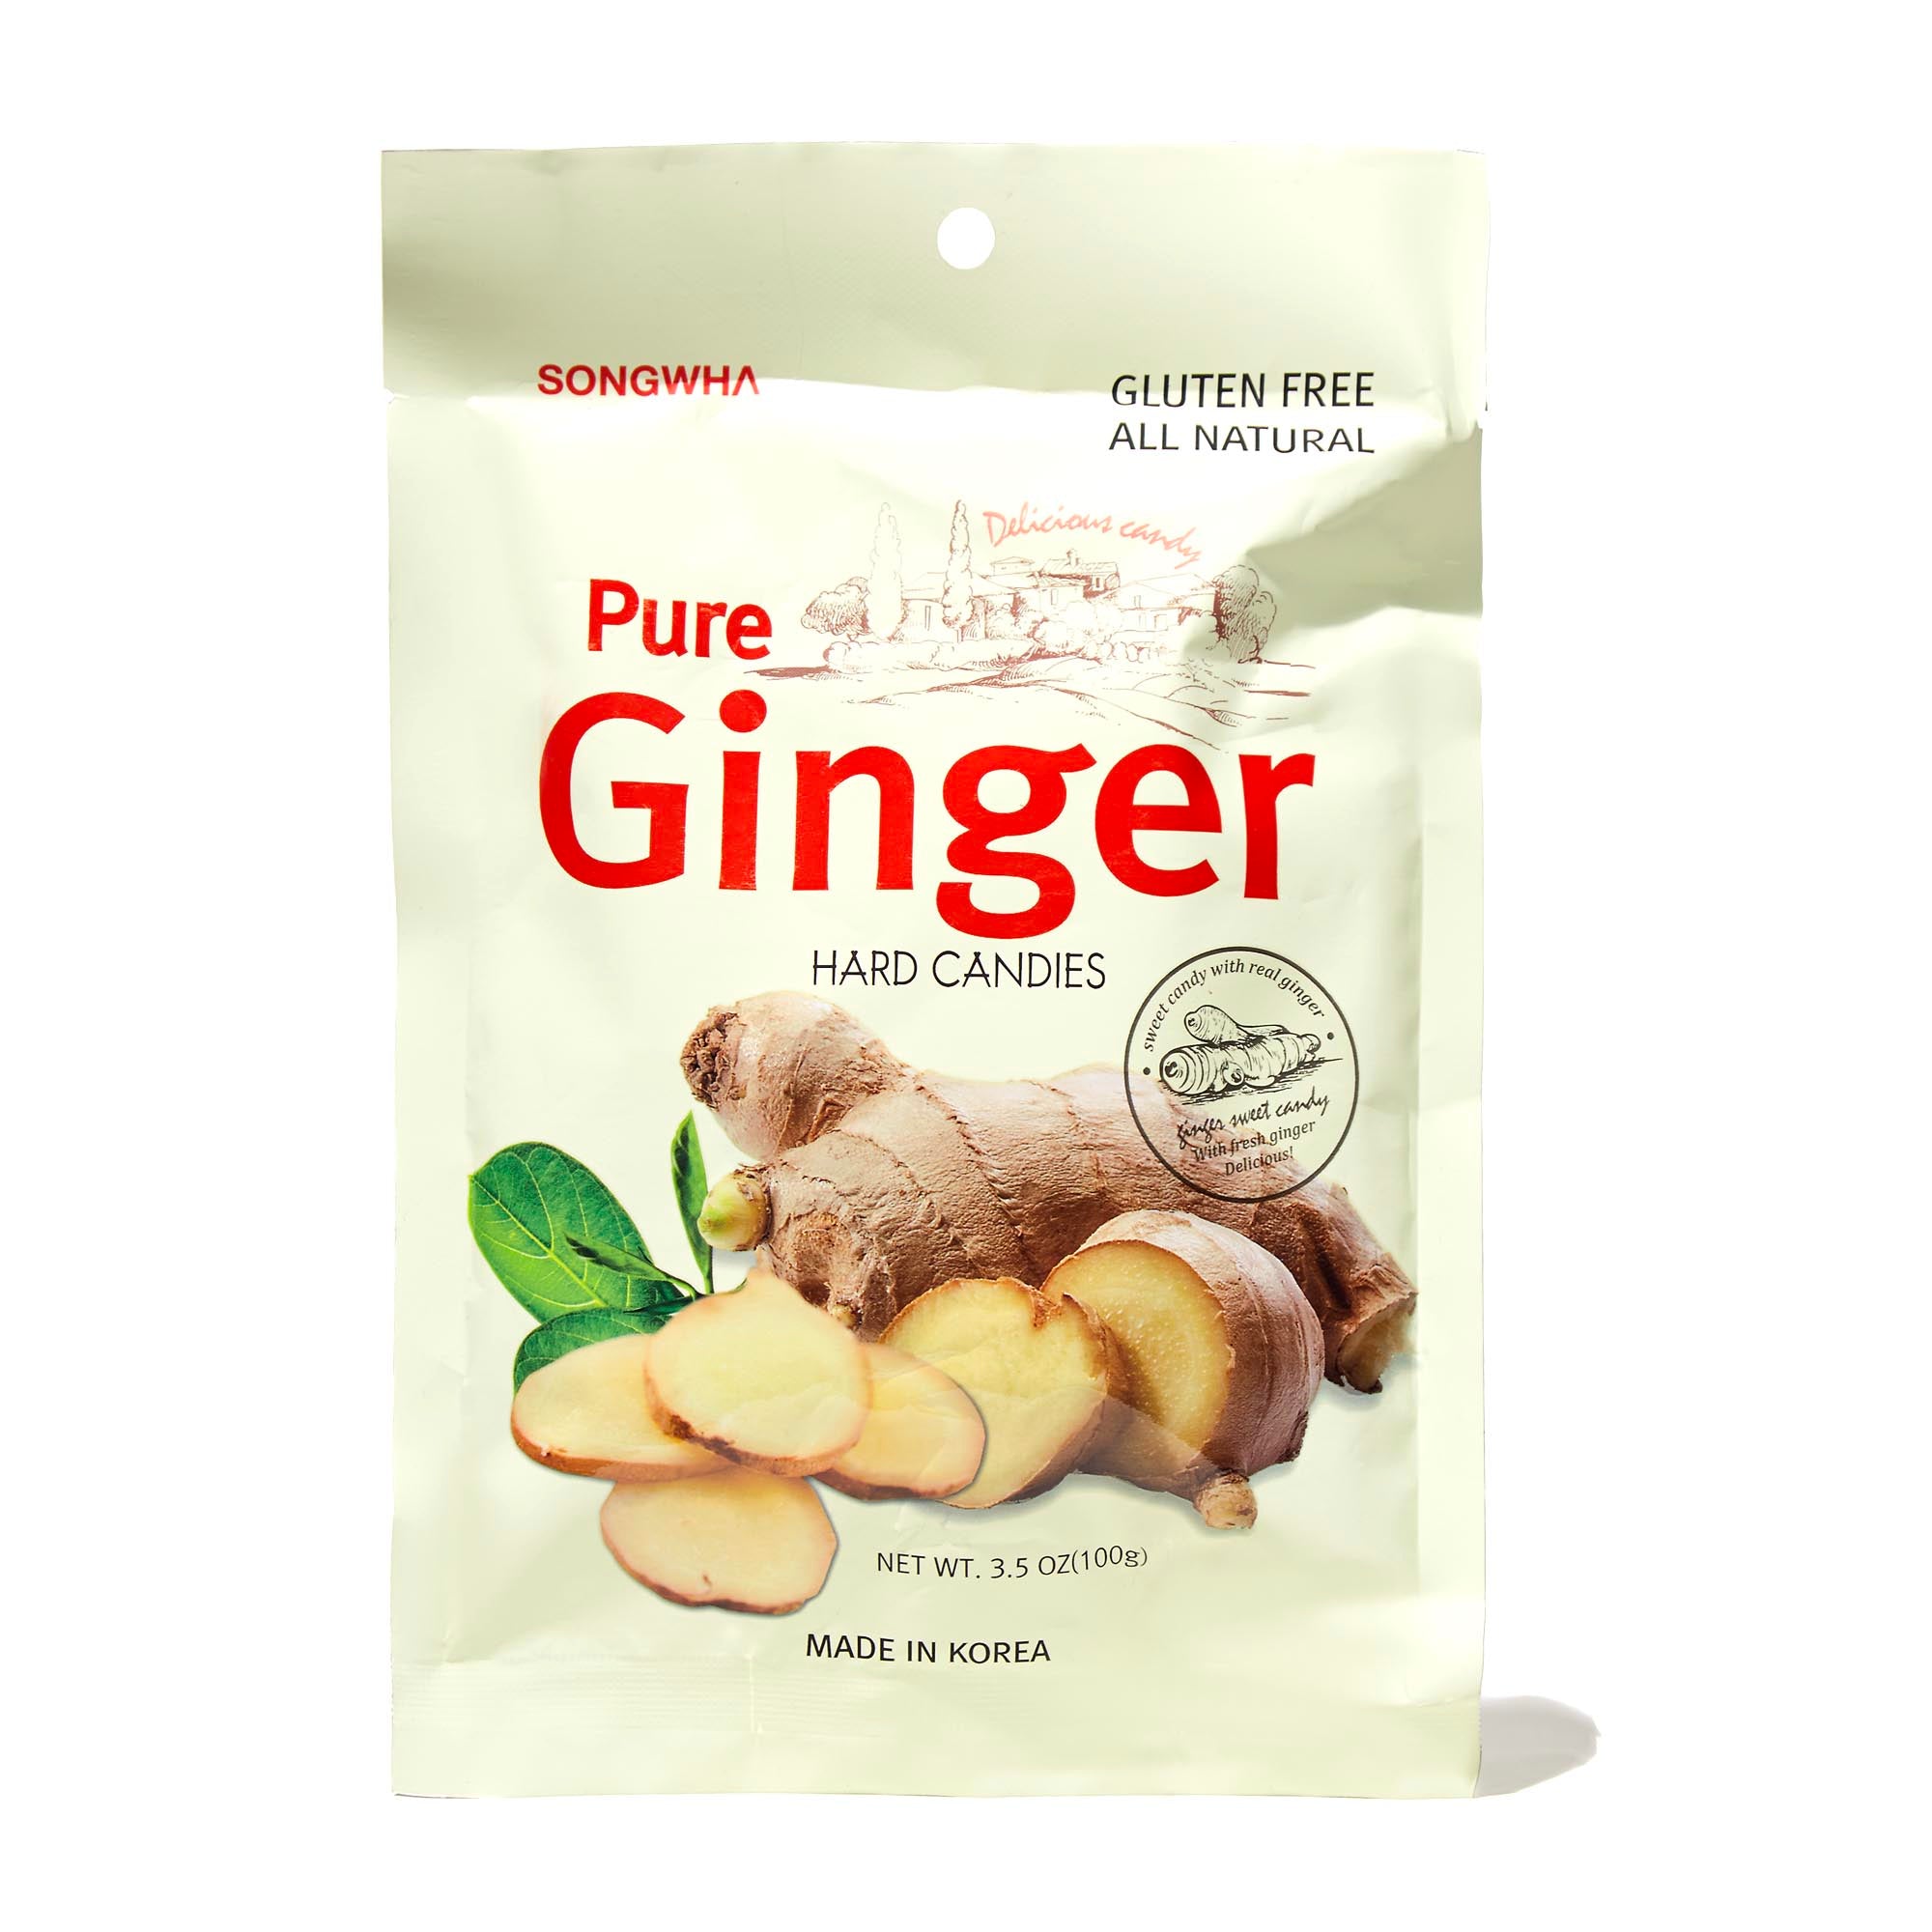 Pure Ginger Candy Bokksu Market 1917